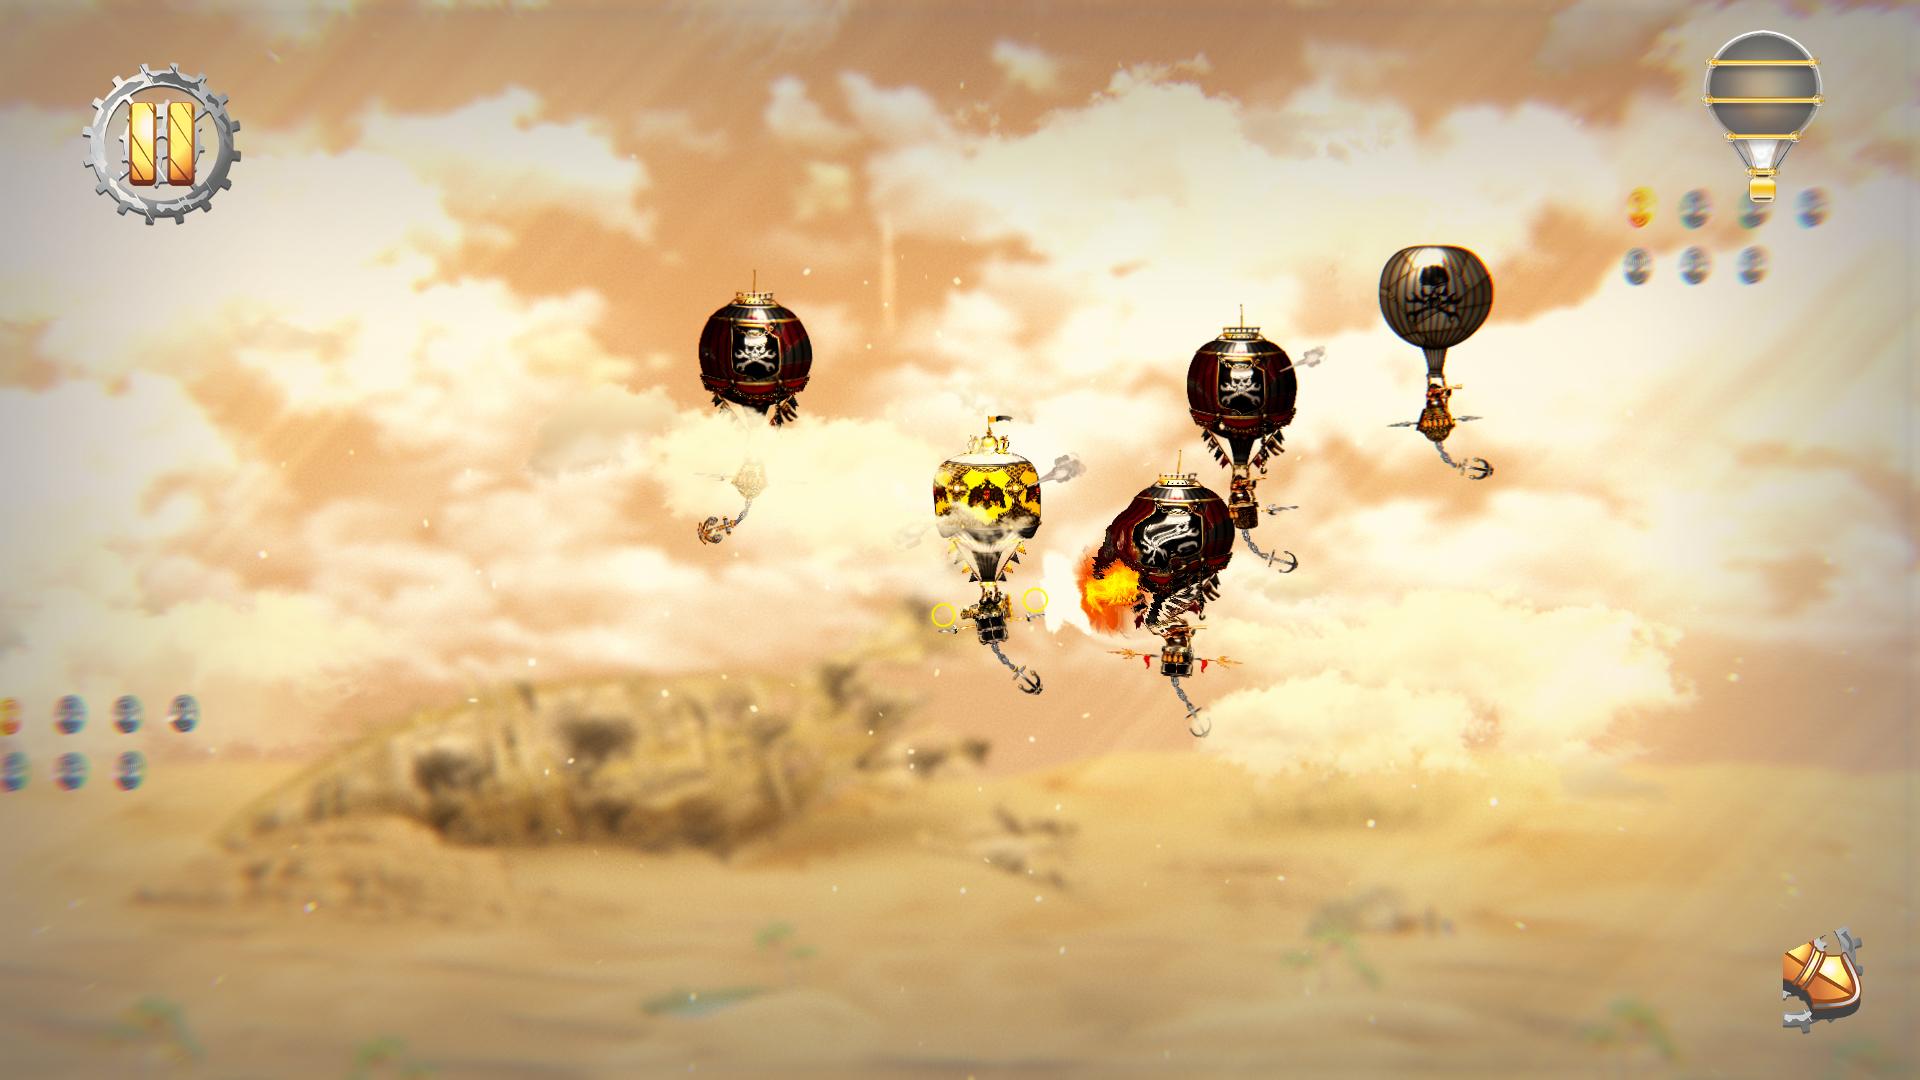 Screenshot №2 from game Pilam Sky